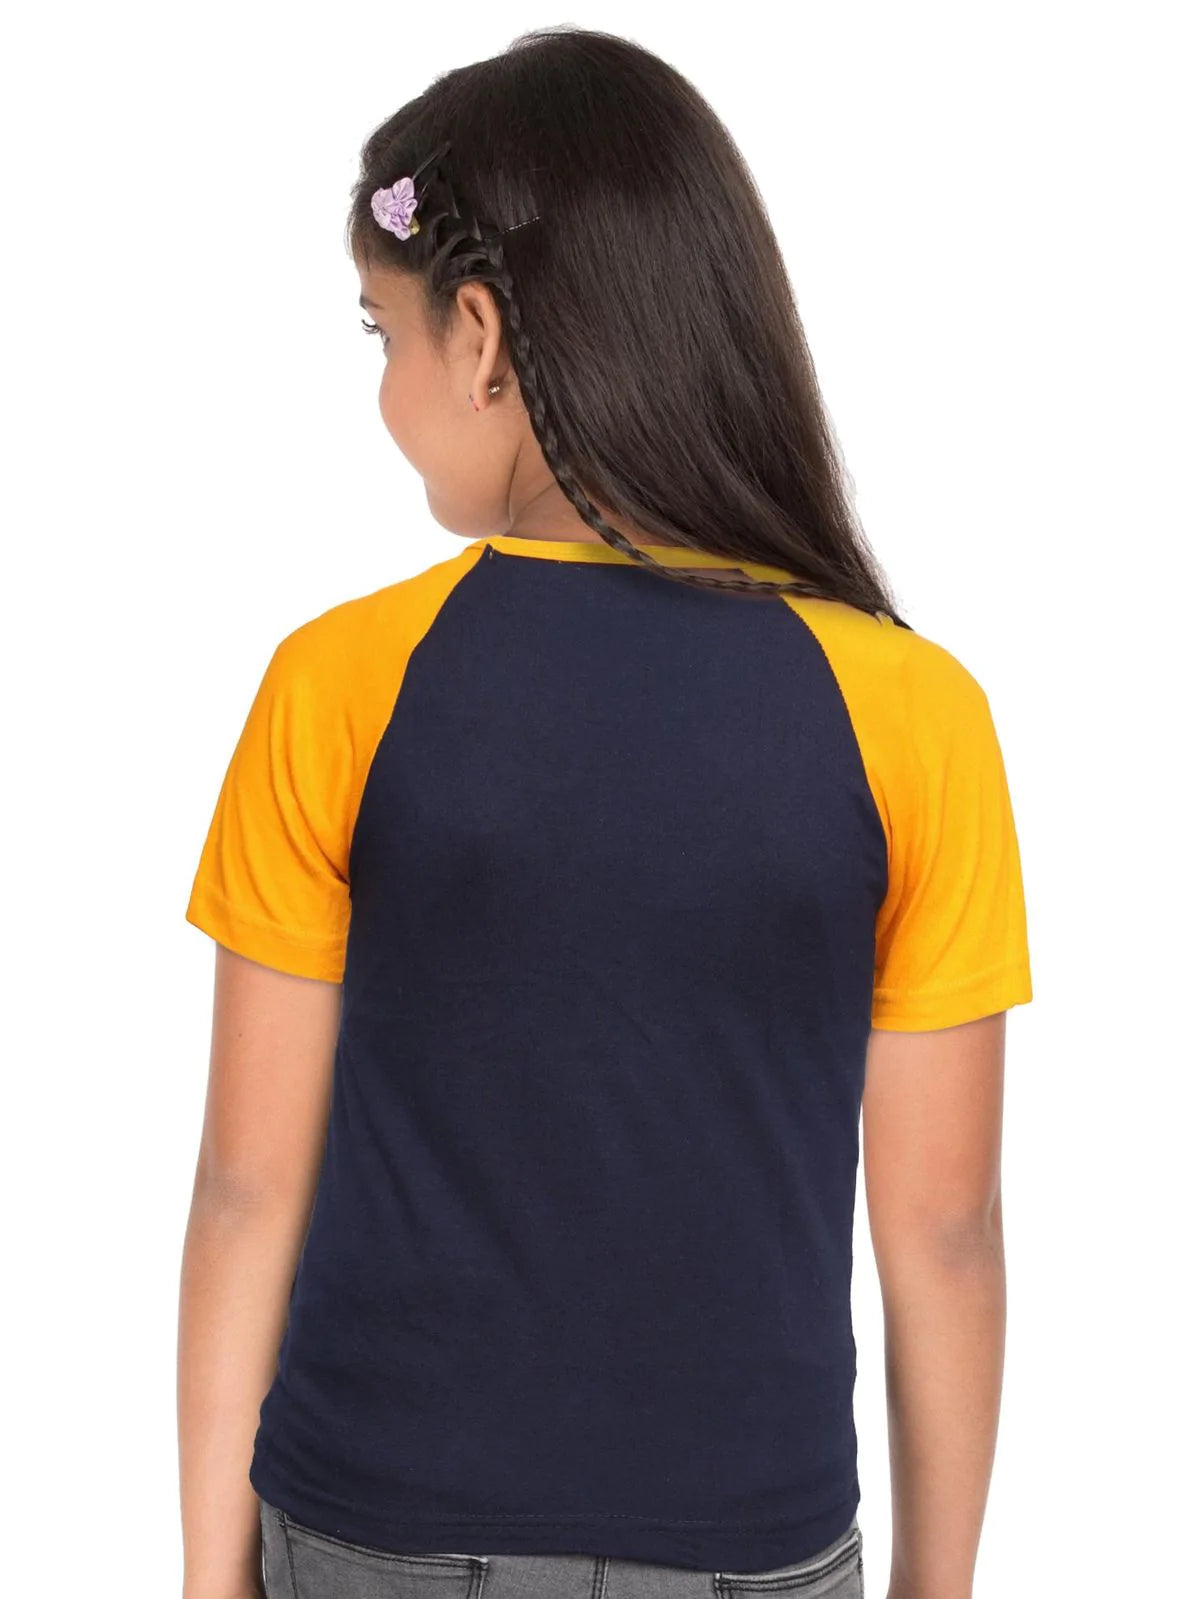 Fleximaa Boys & Girls Printed Raglan Half Sleeve T-Shirt (Pack of 4) - Fleximaa